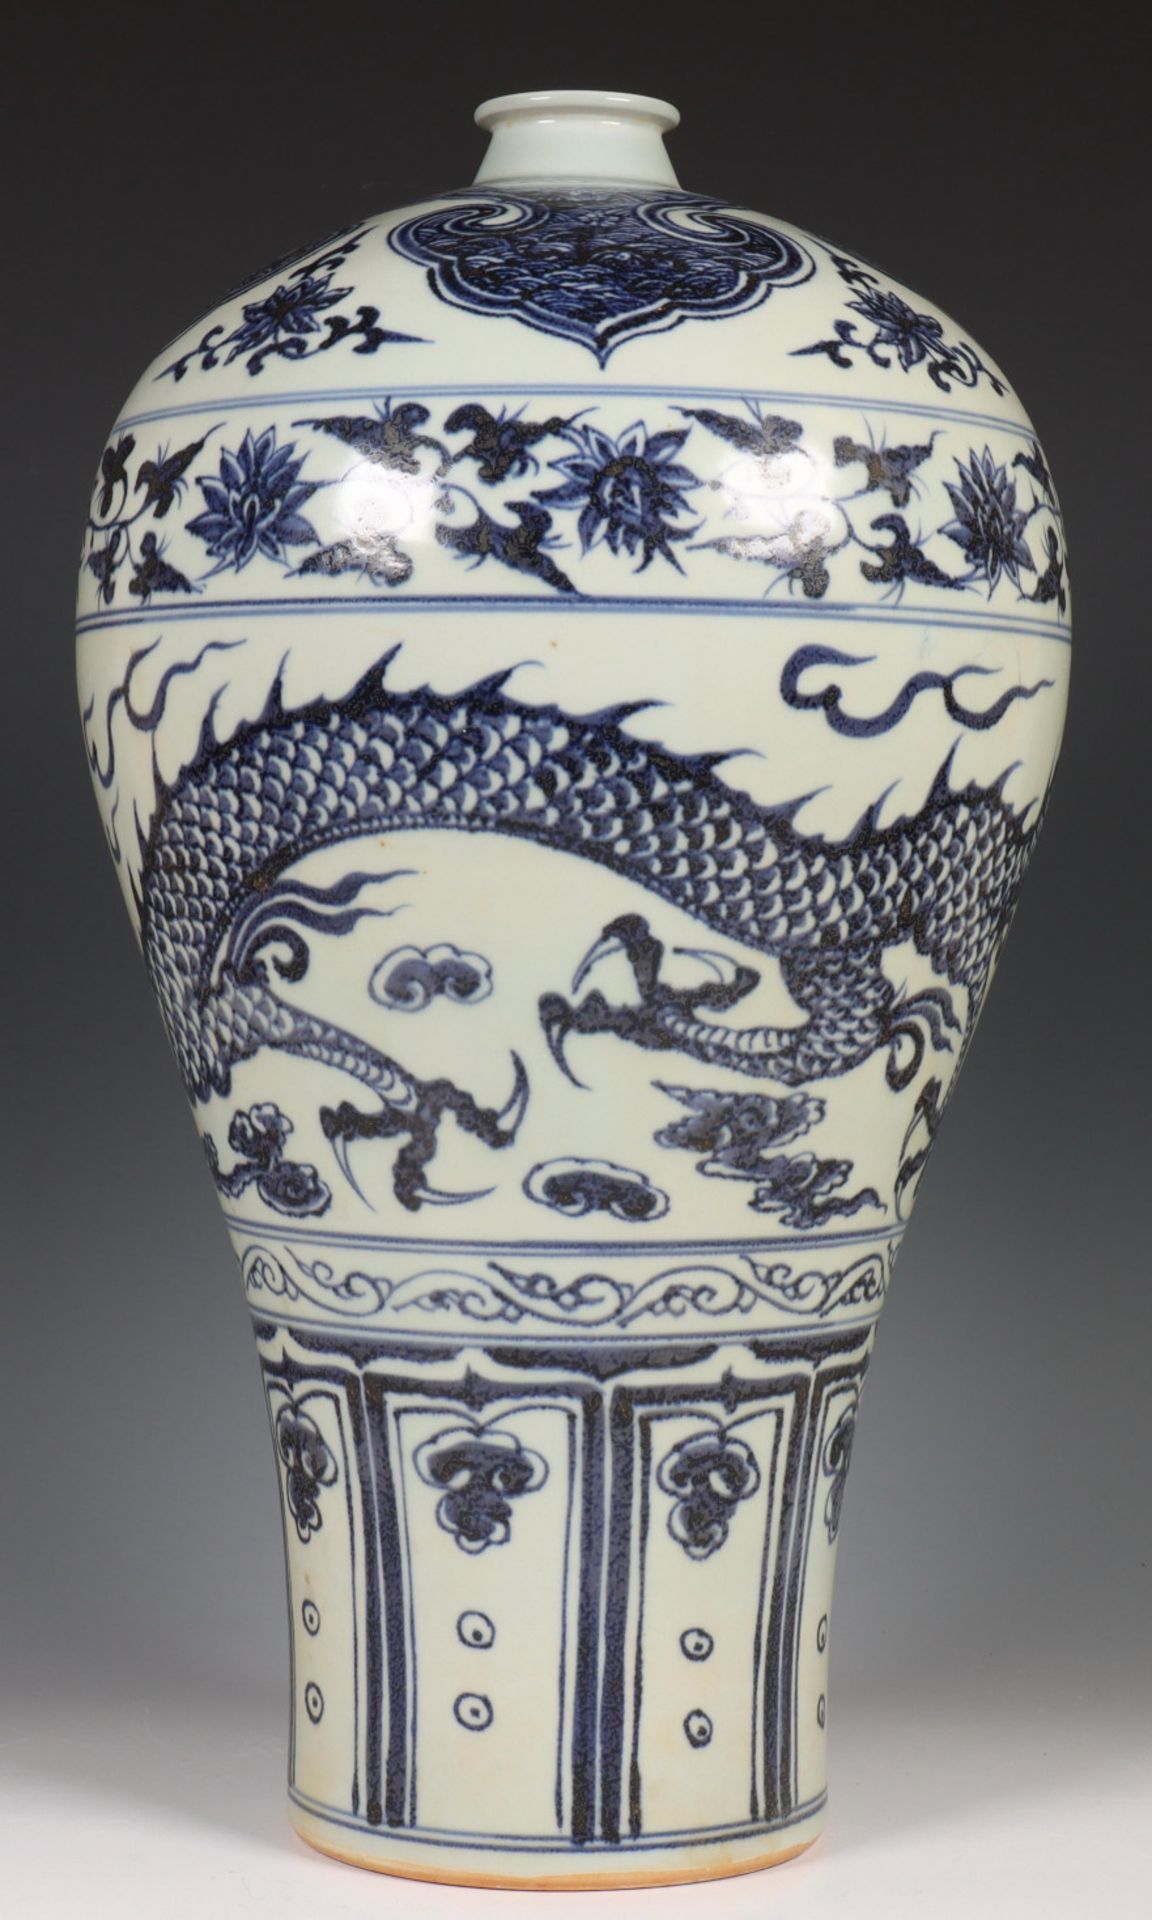 China, porseleinen meiping vaas naar antiek voorbeeld - Image 2 of 2